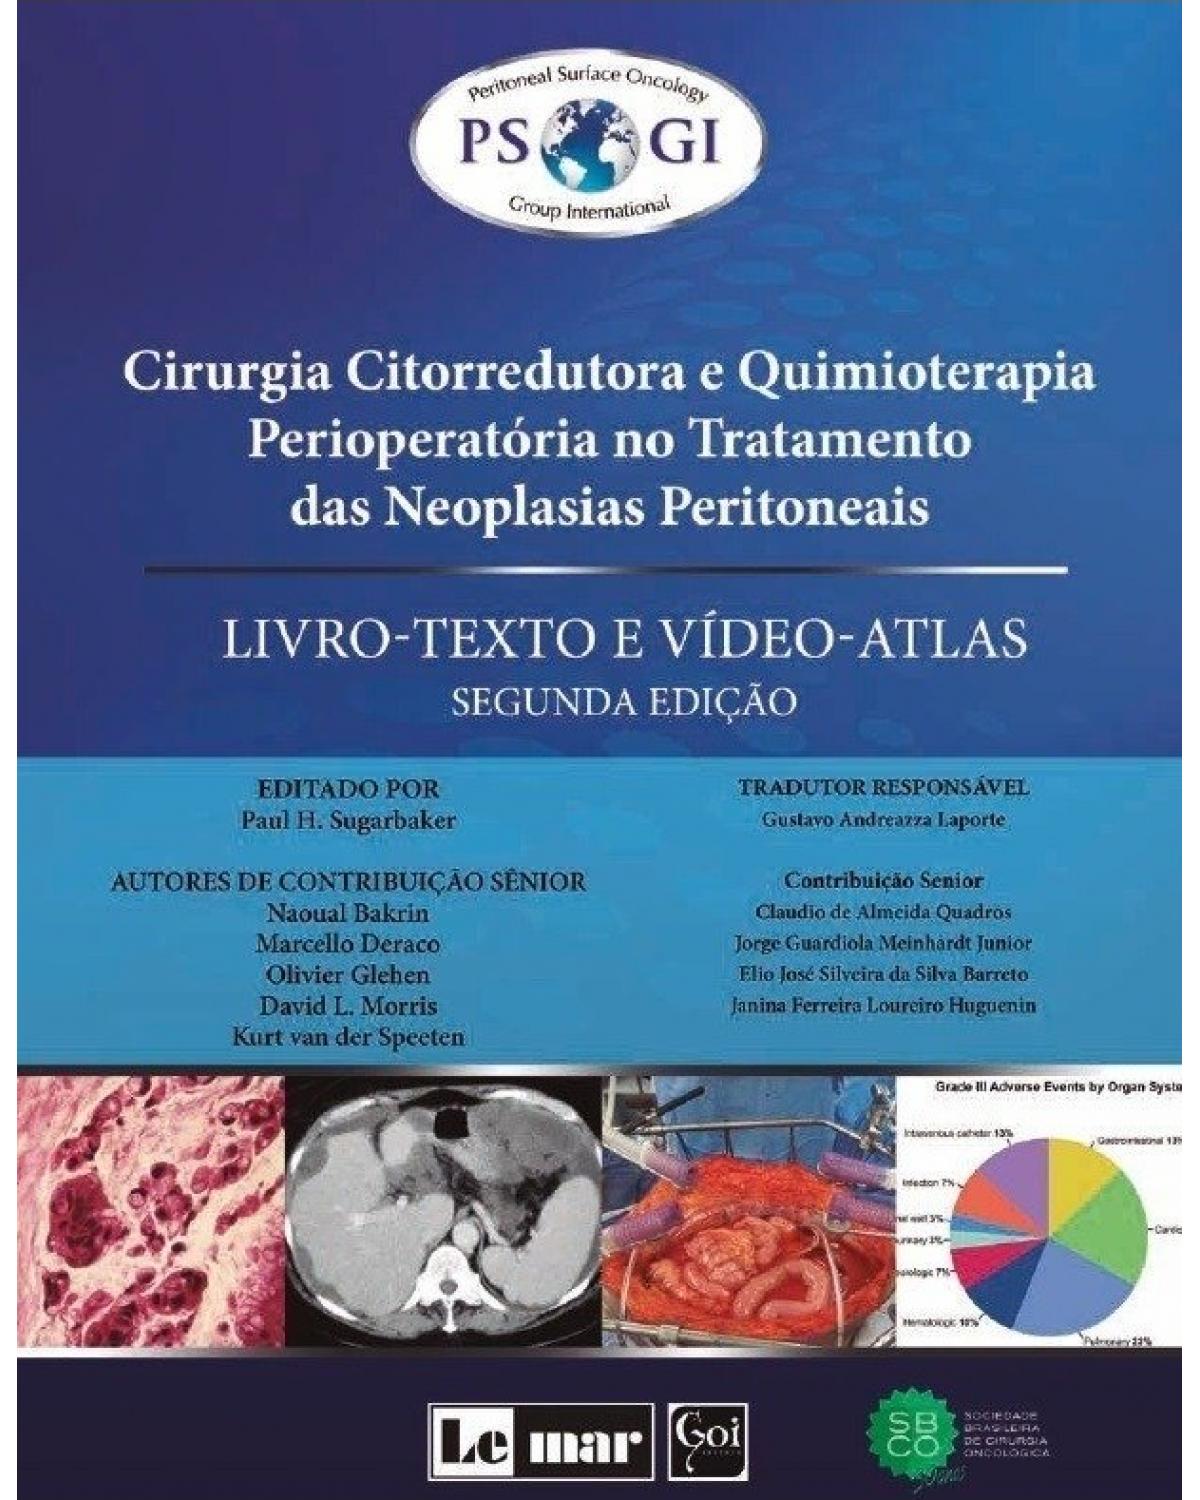 Cirurgia citorredutora e quimioterapia perioperatória no tratamento das neoplasias peritoneais: livro-texto e vídeo-atlas - 2ª Edição | 2019